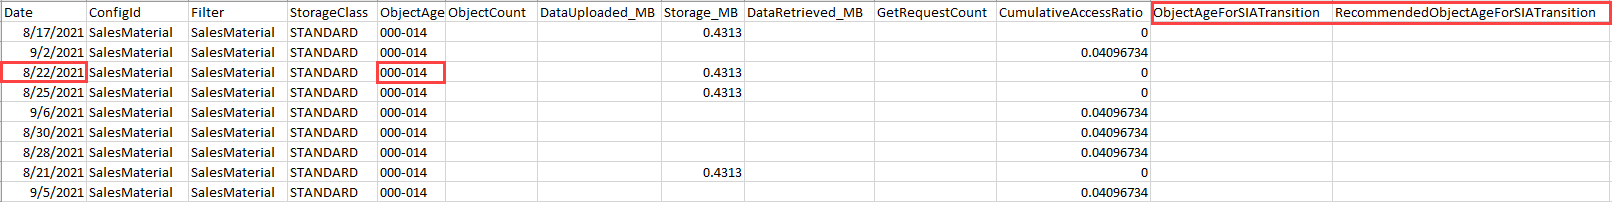 Screenshot der exportierten Speicherklassenanalysedaten, sortiert nach Datum innerhalb der Altersgruppe der Objekte.